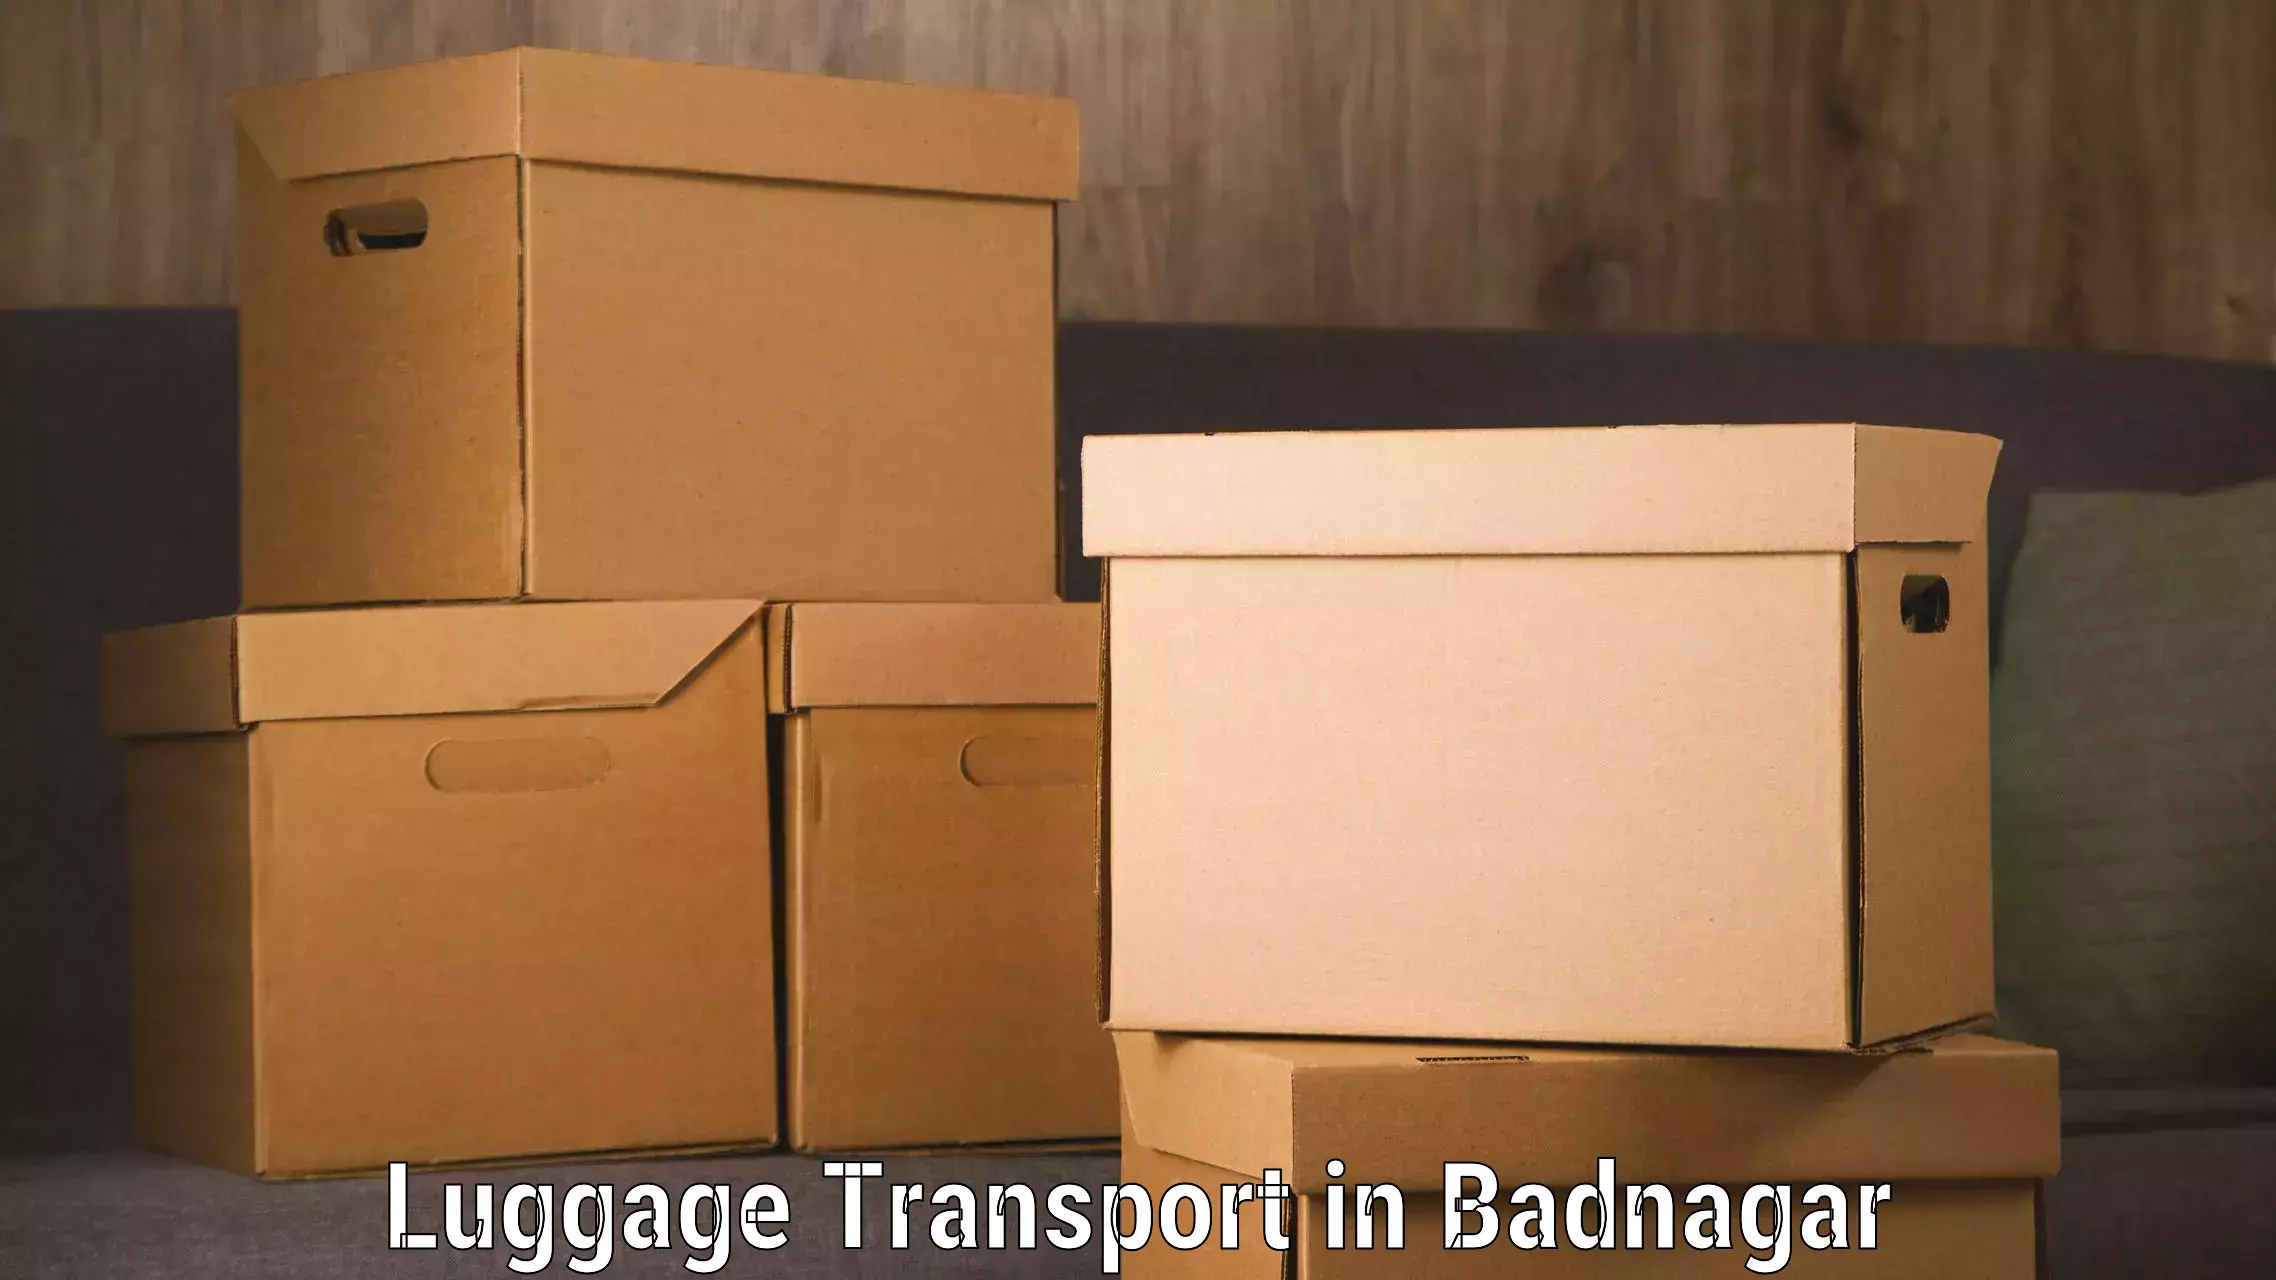 Luggage shipment specialists in Badnagar